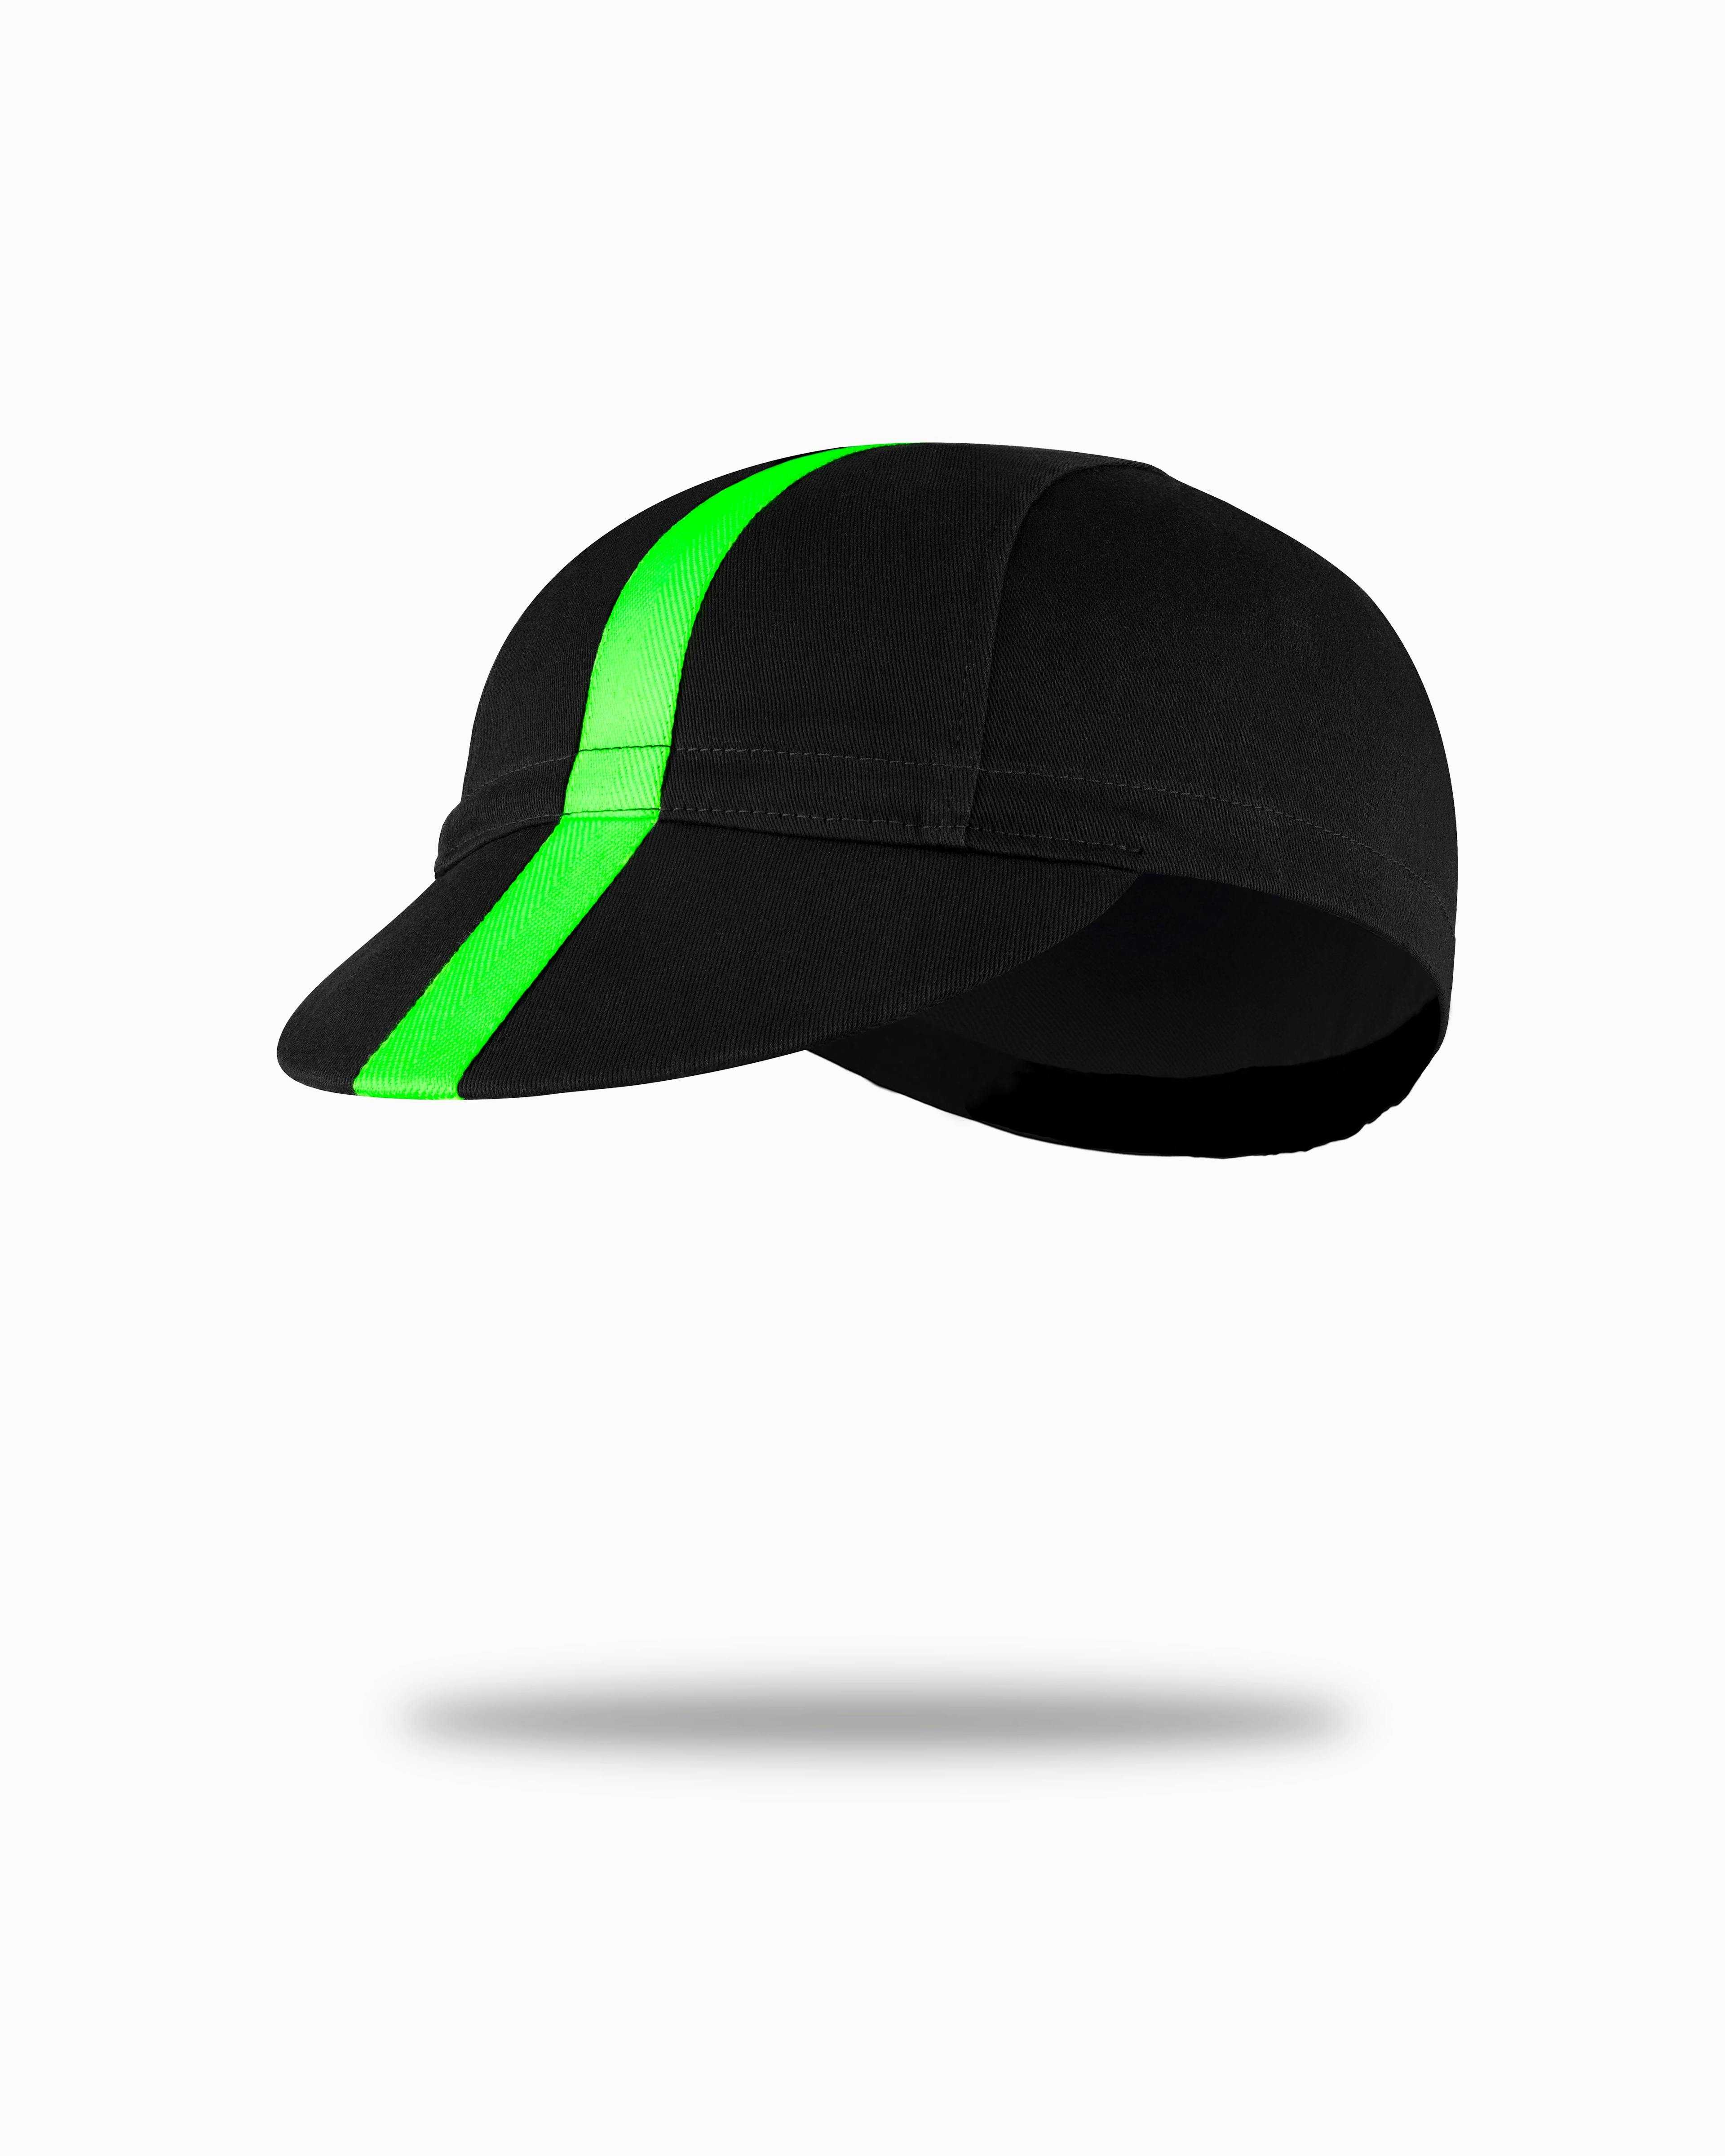 Ride Cap (Black/Green)